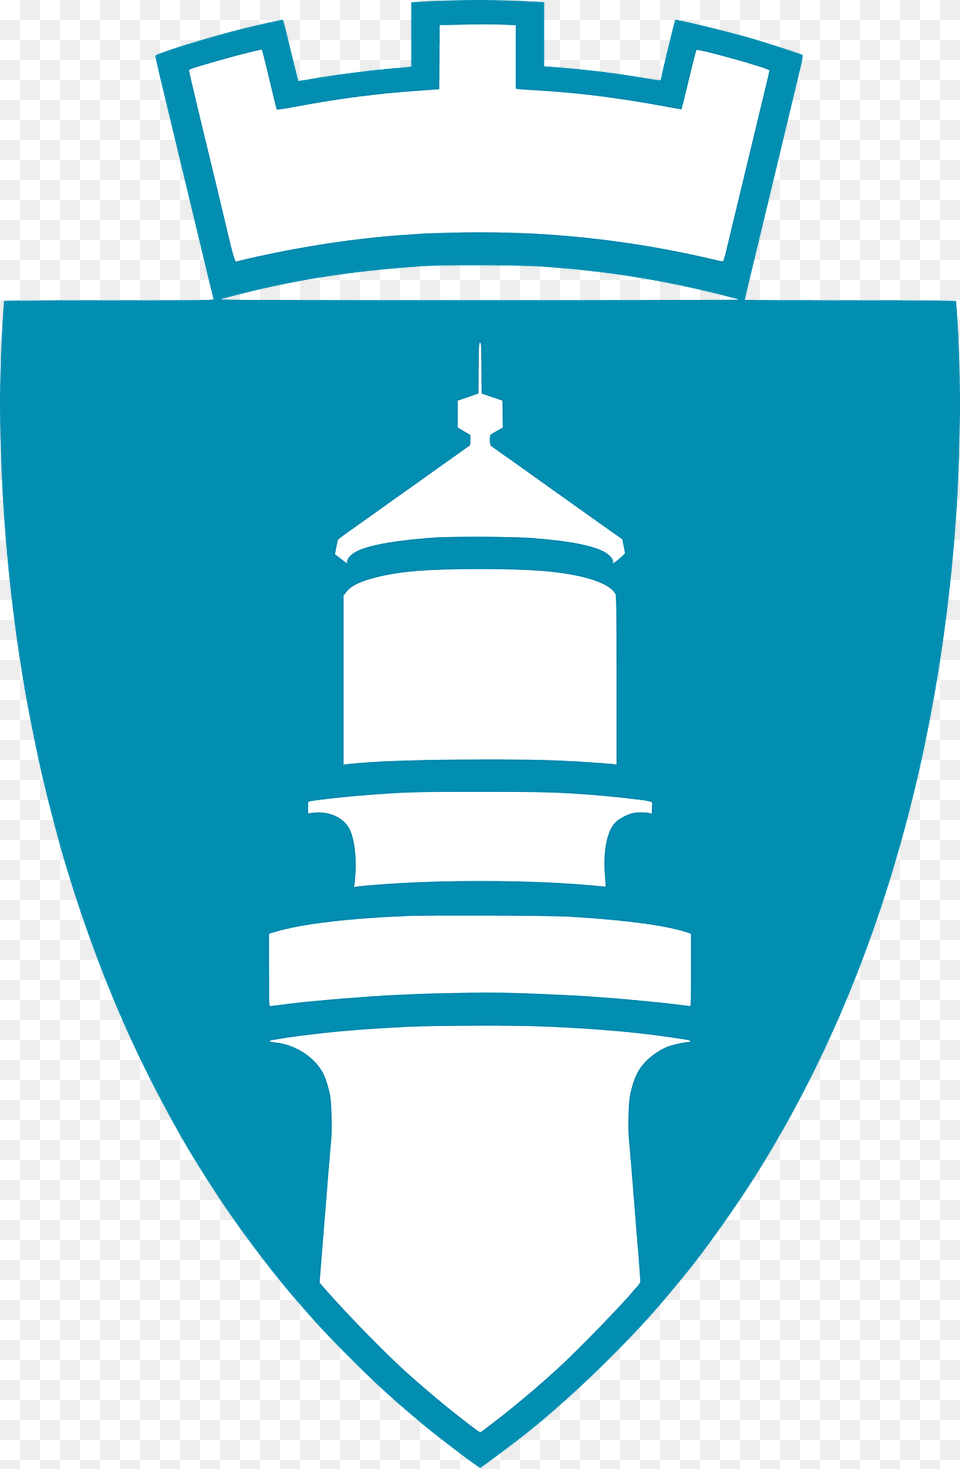 Lindesnes Komm 2020 Clipart, Badge, Logo, Symbol Png Image